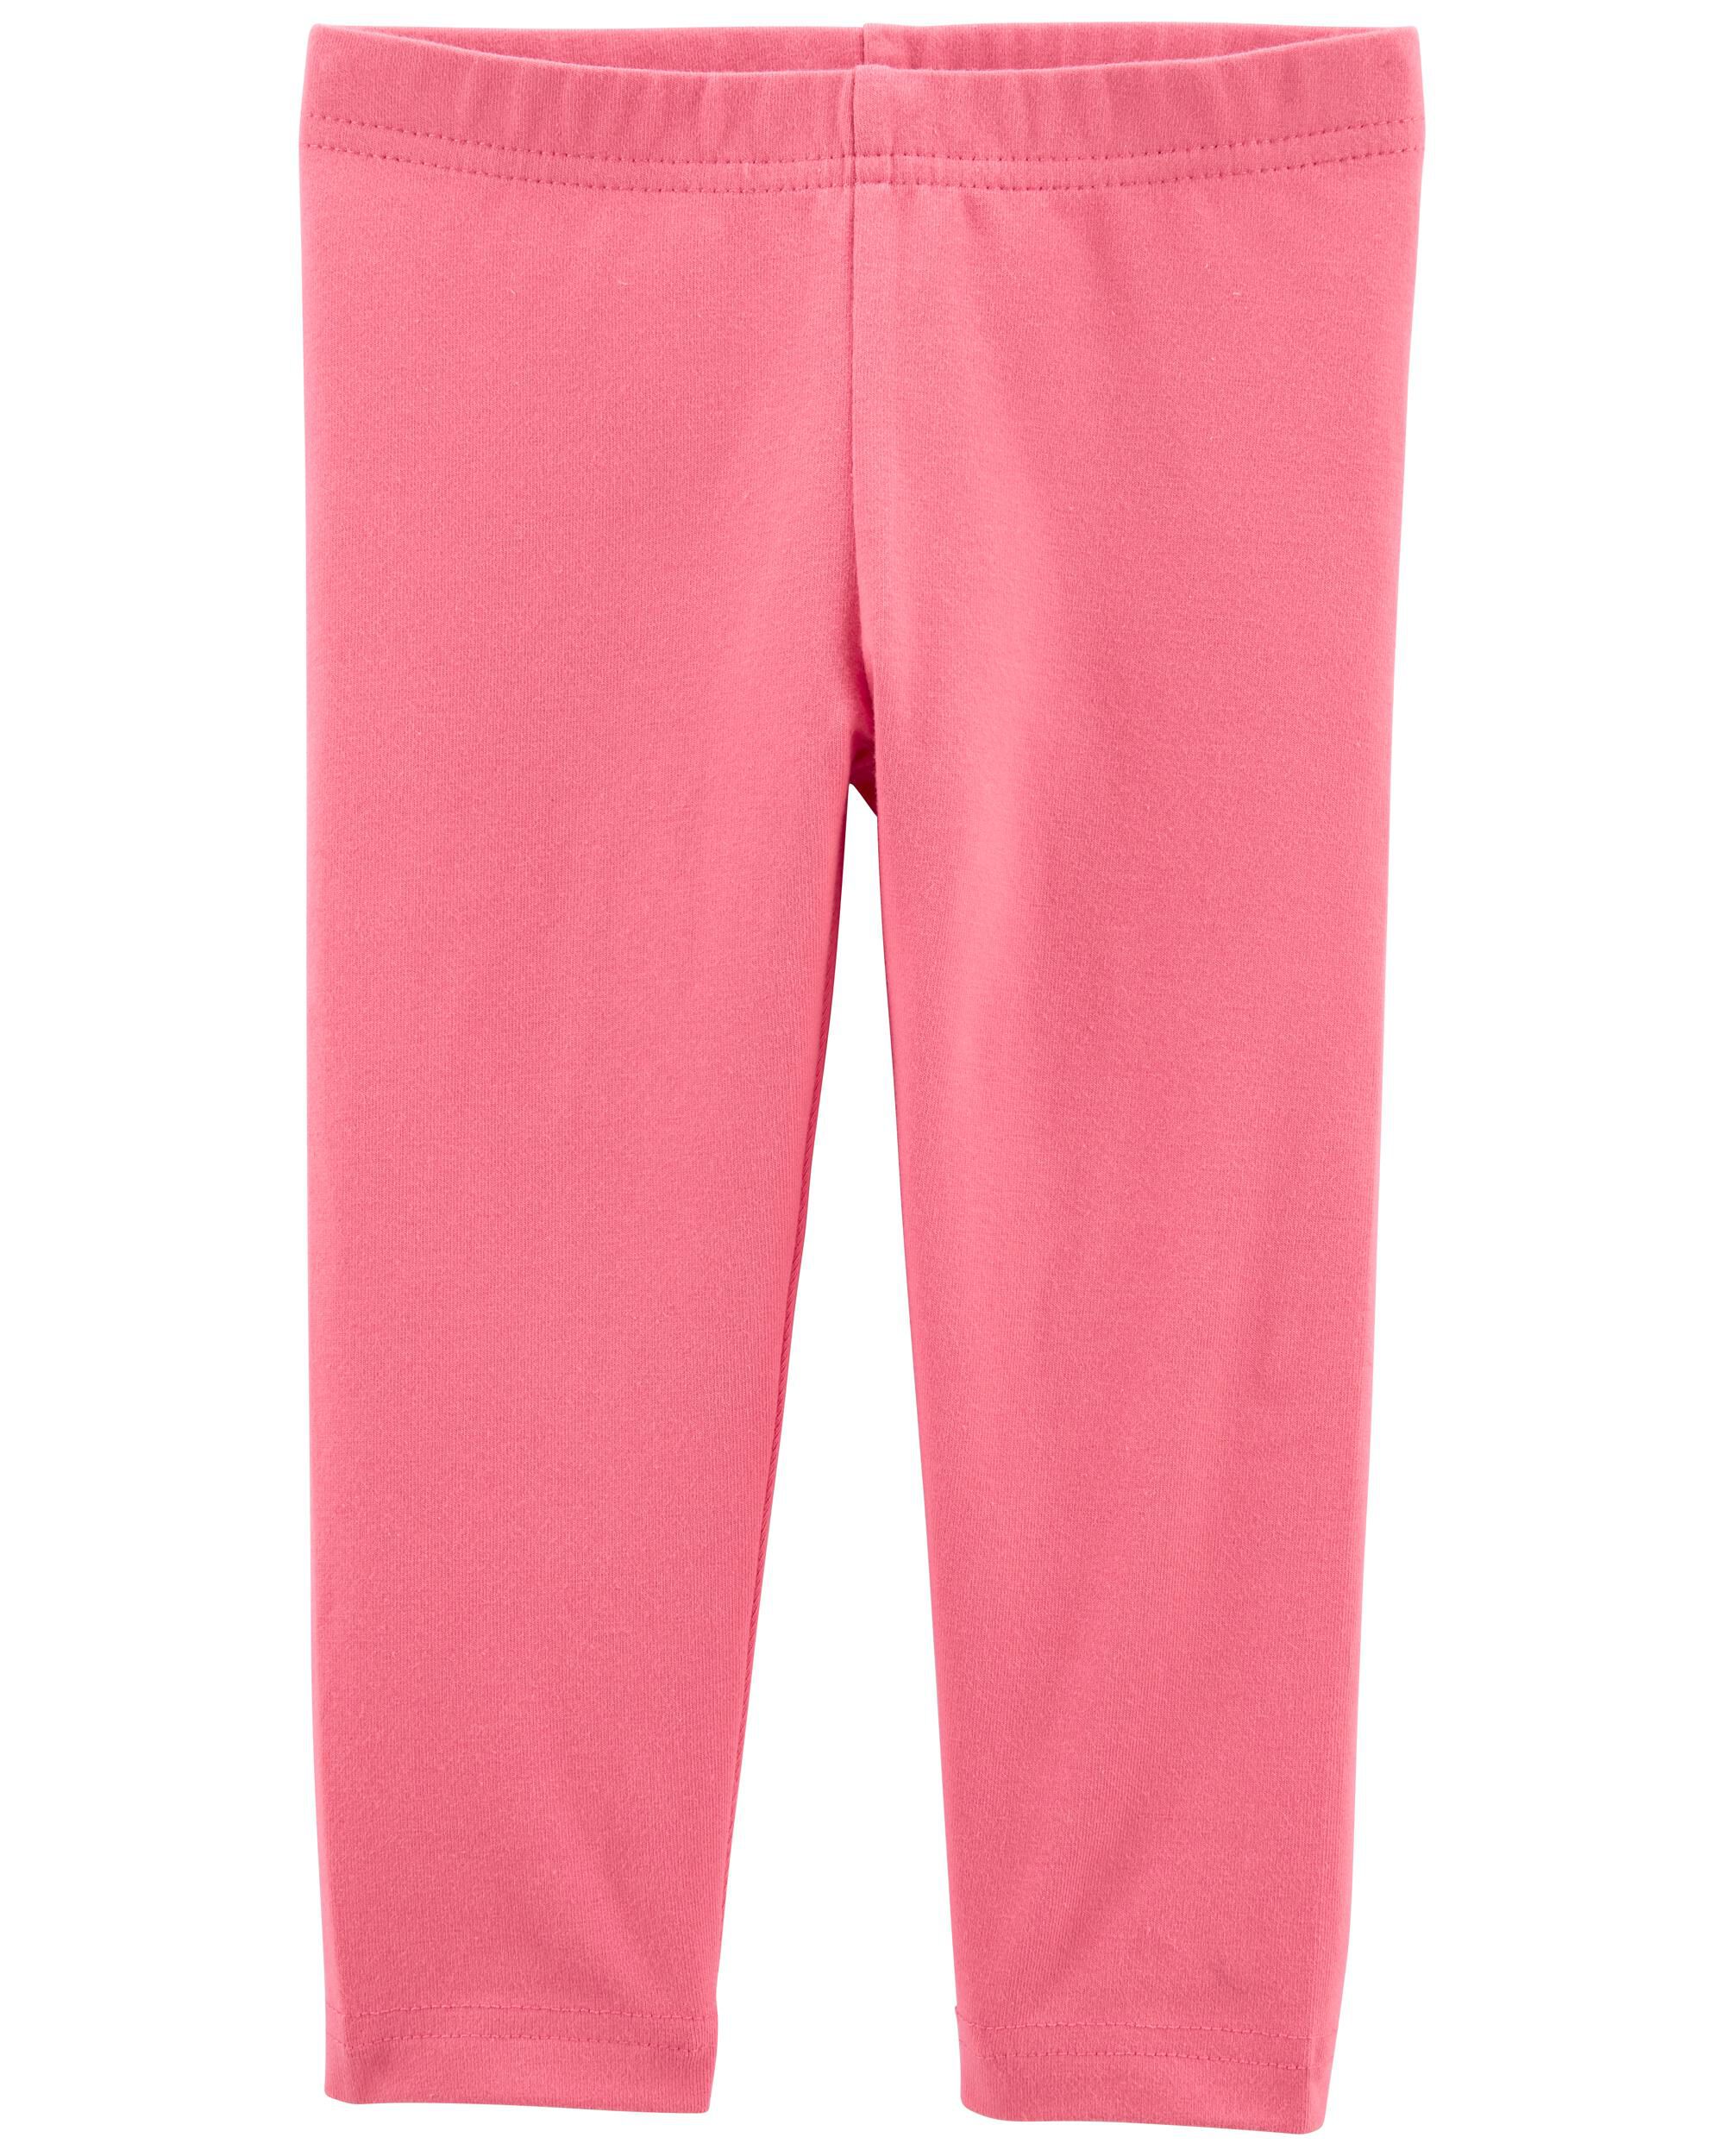 pink capri leggings Hot Sale - OFF 56%